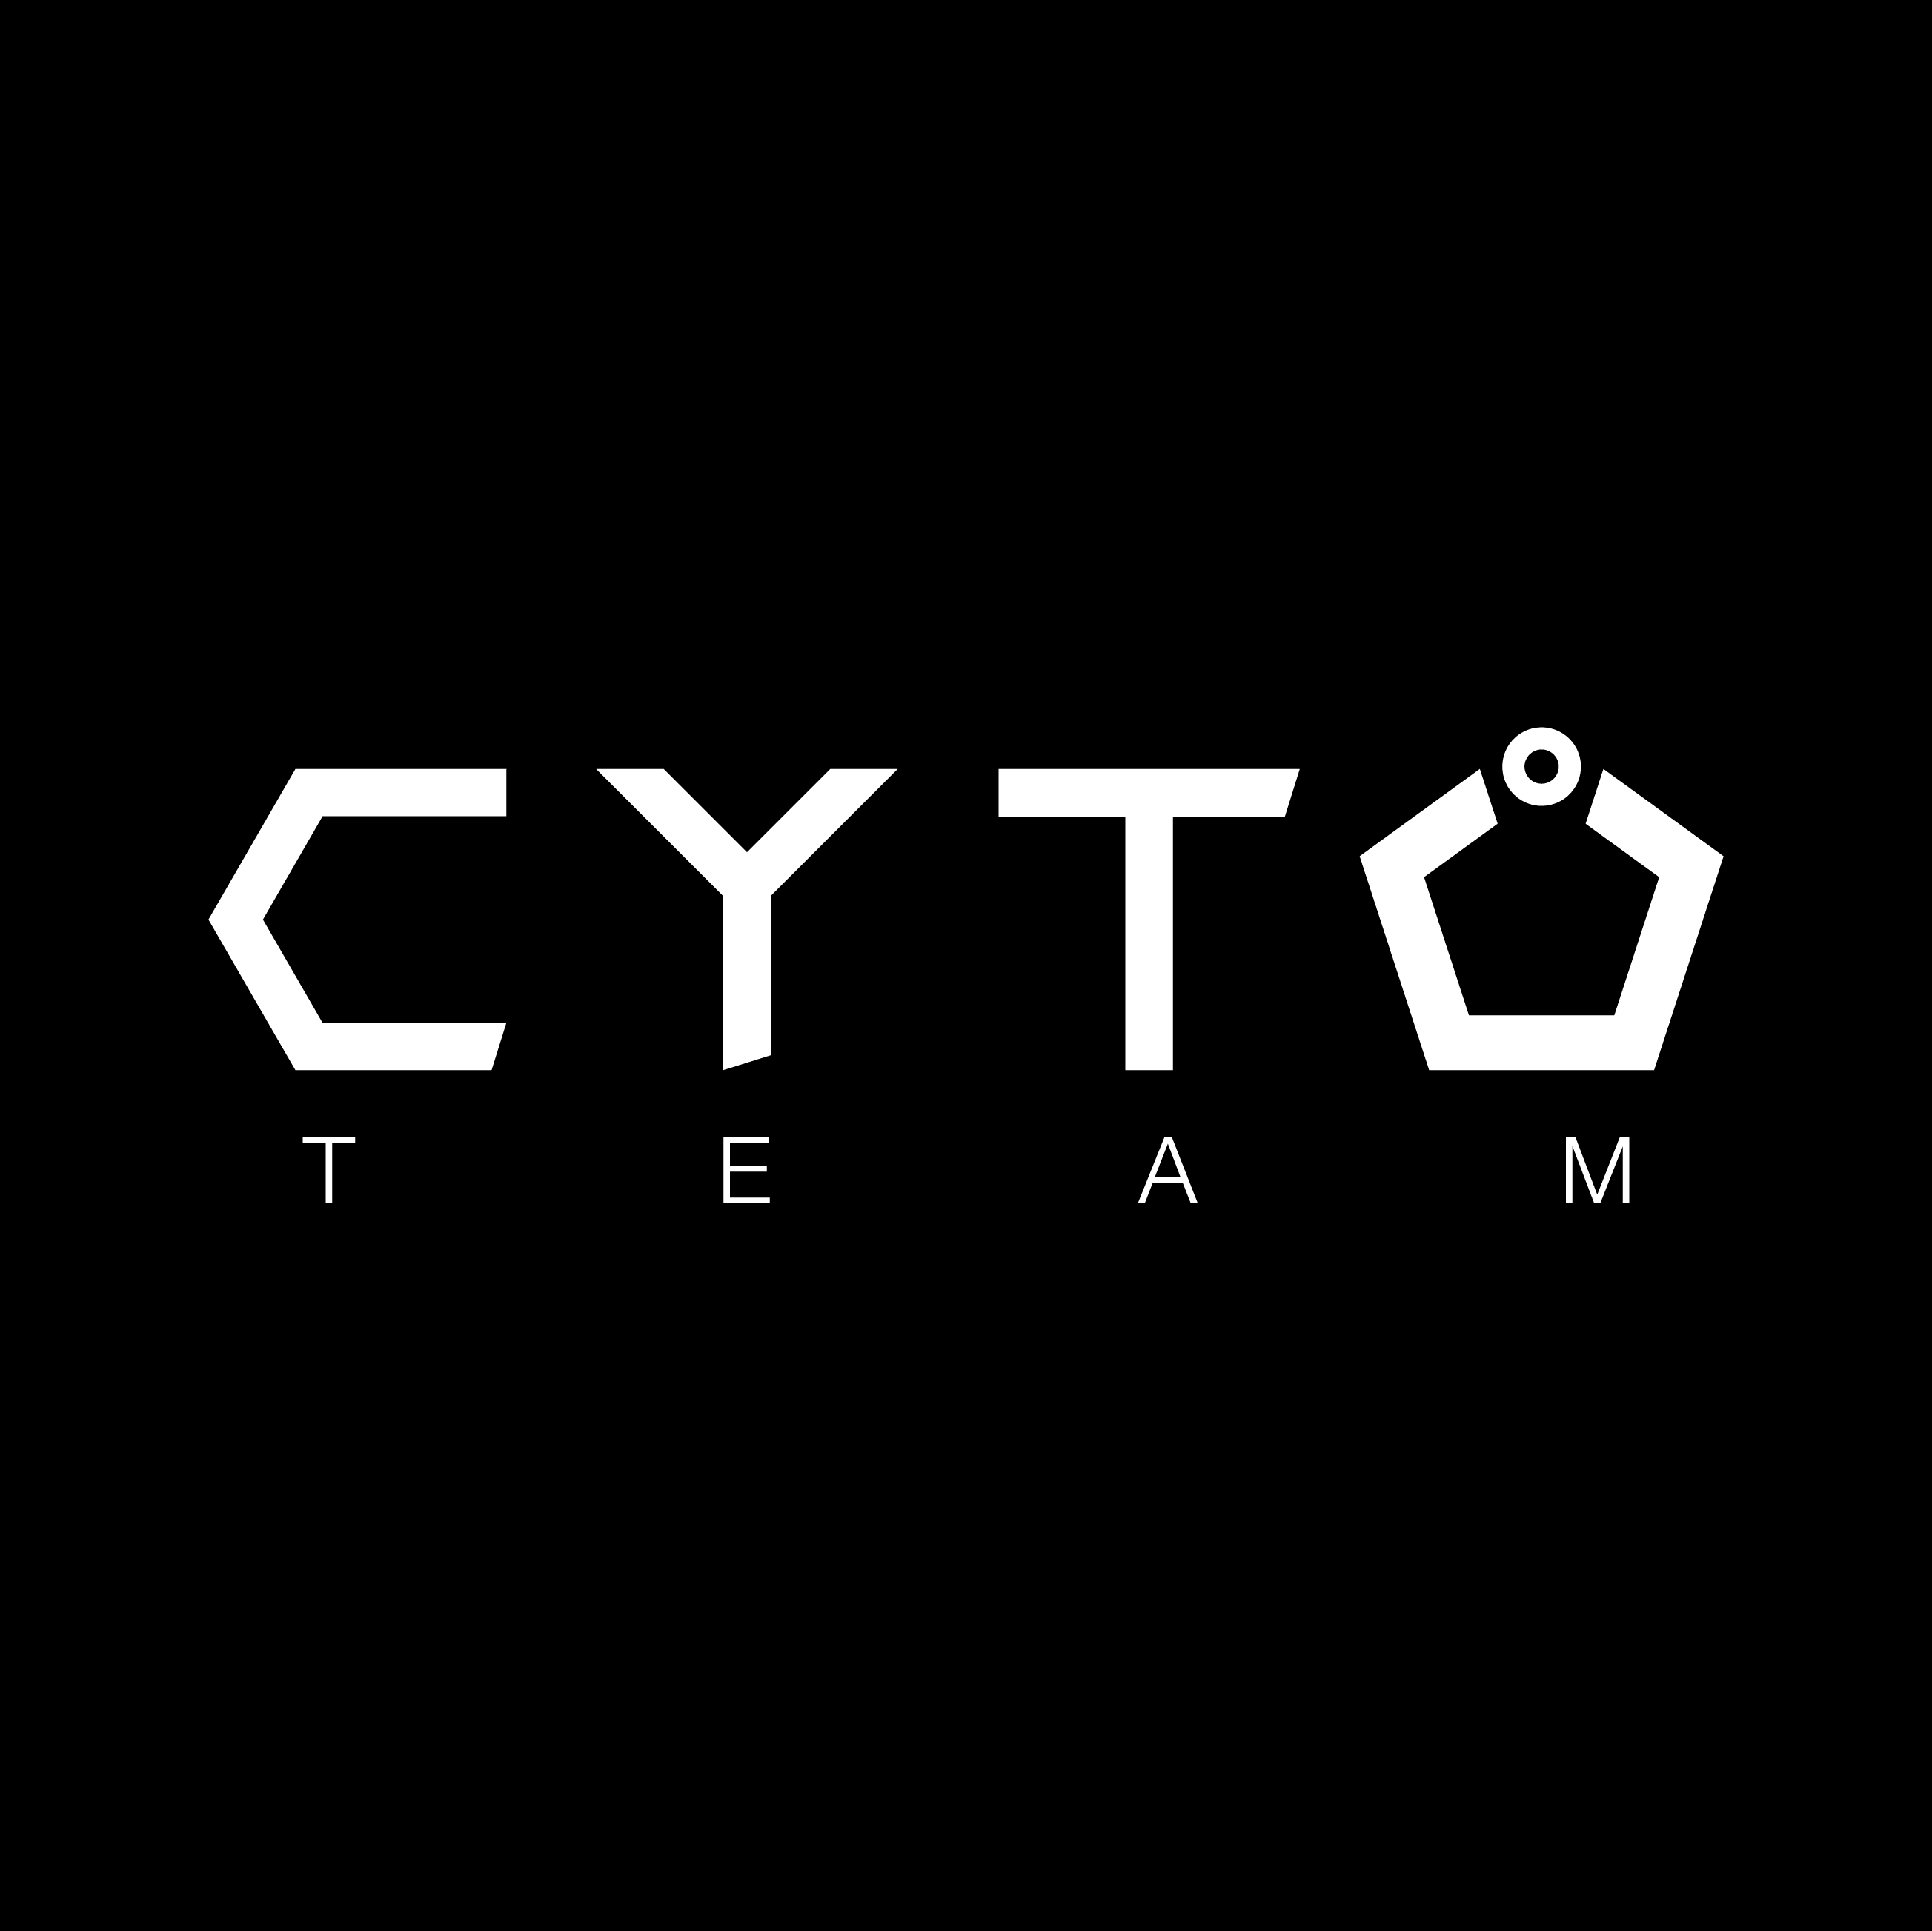 Club Image for TEAM CYTO